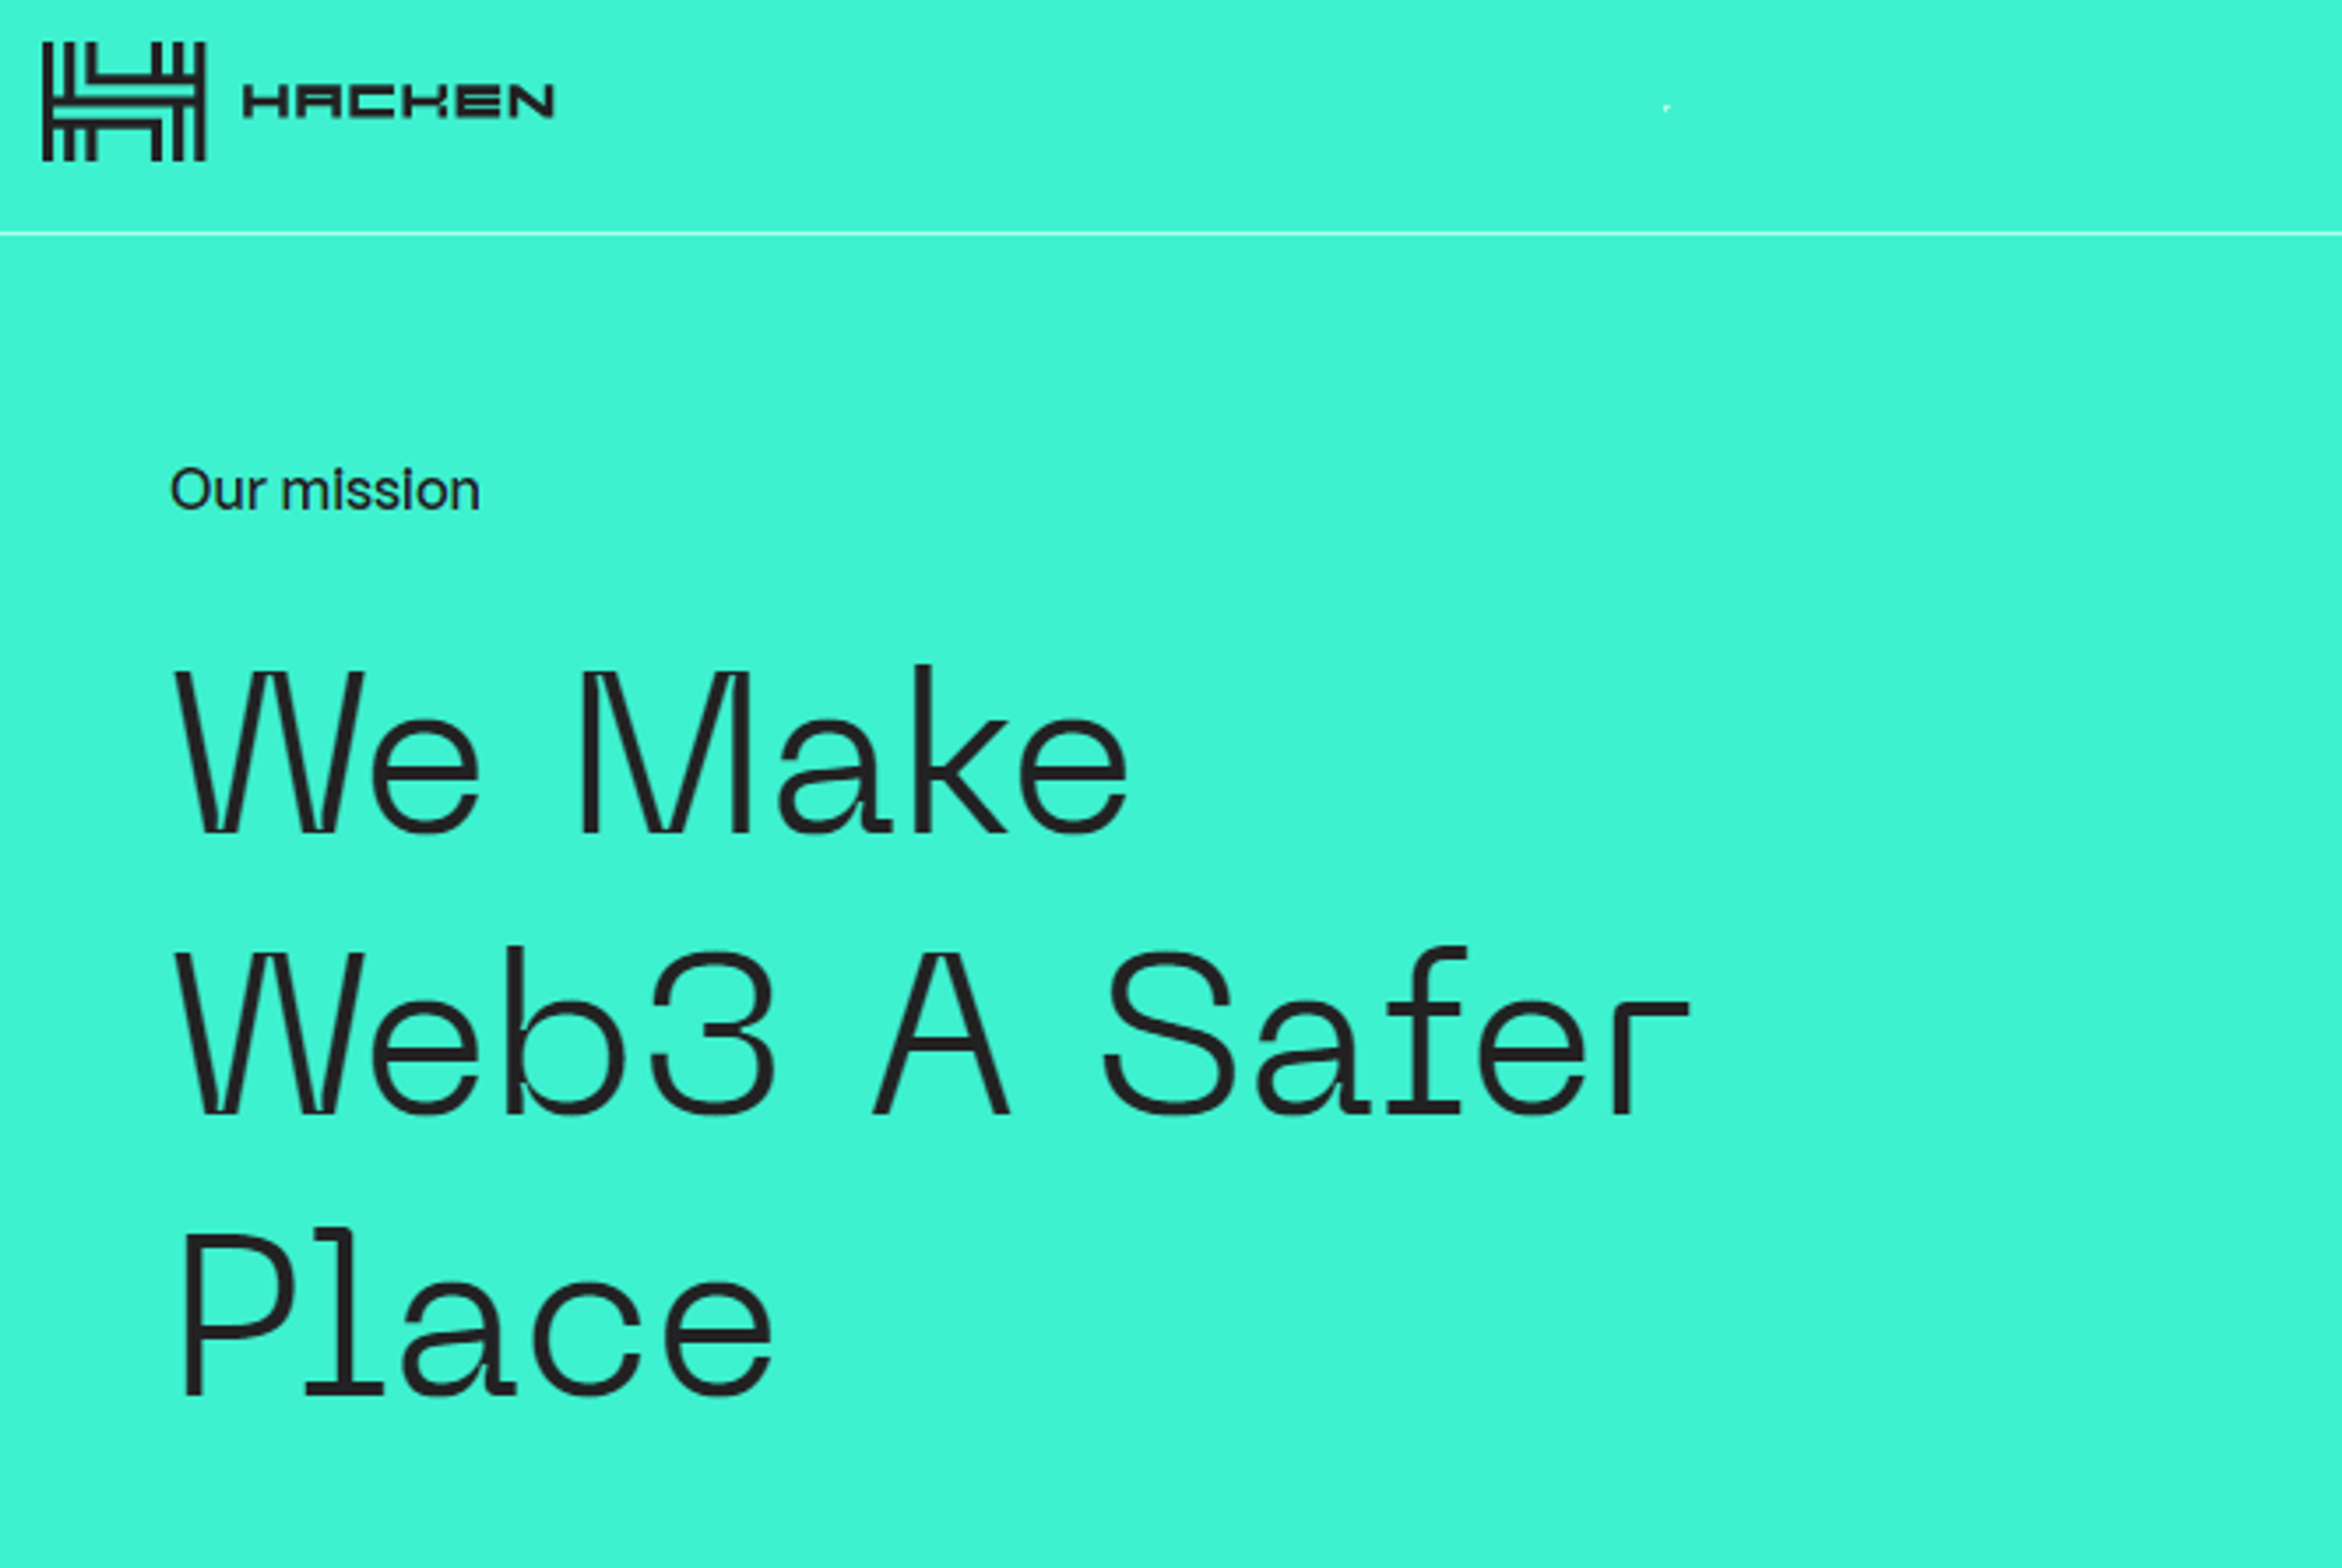 Hacken Mission: We Make Web3 A Safer Place